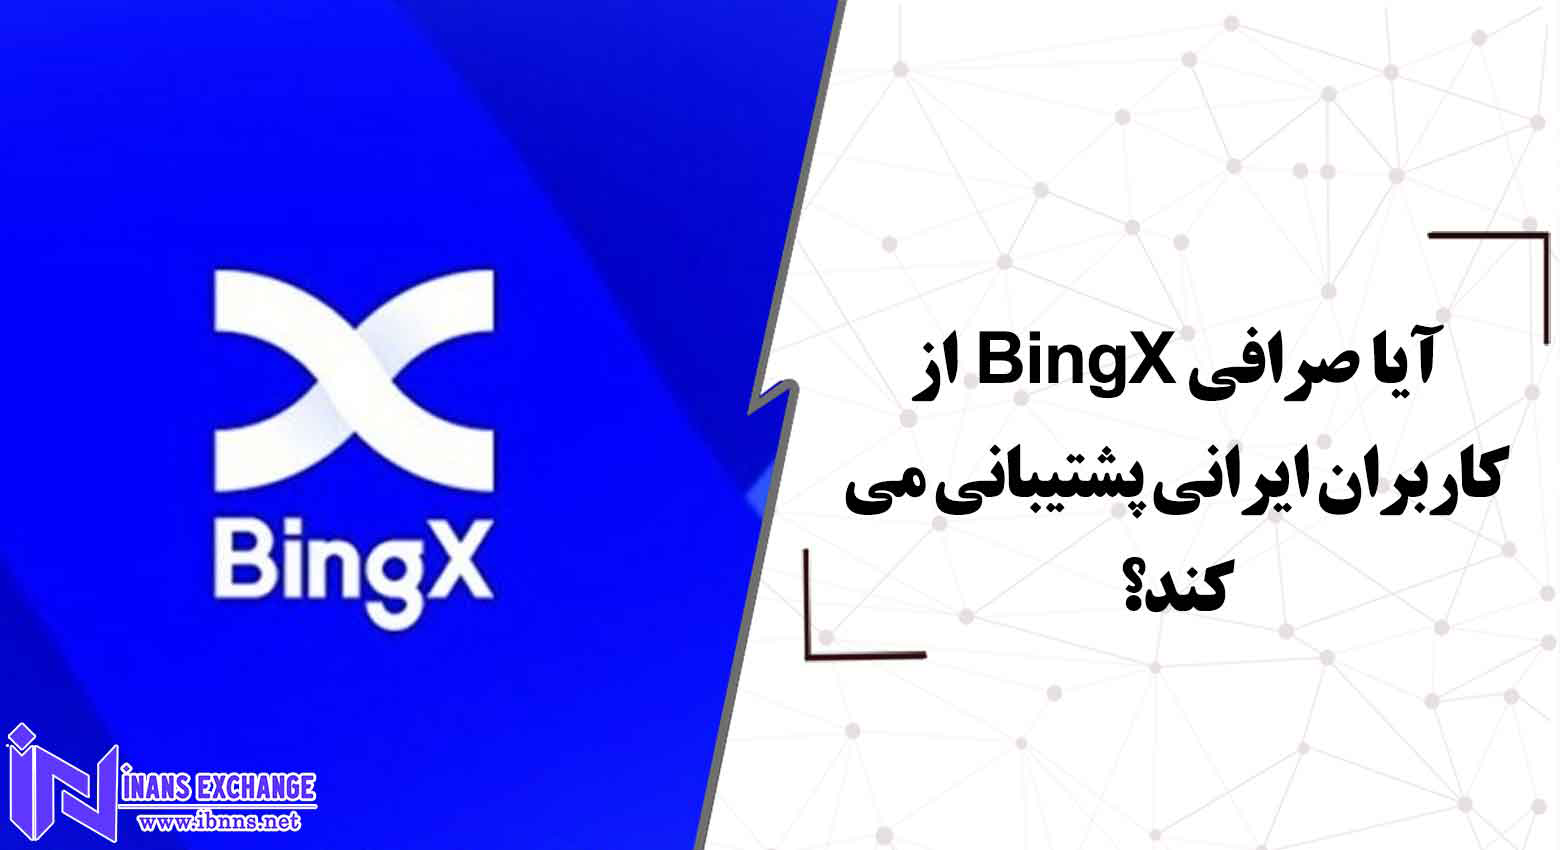  آیا صرافی BingX از کاربران ایرانی پشتیبانی می کند؟